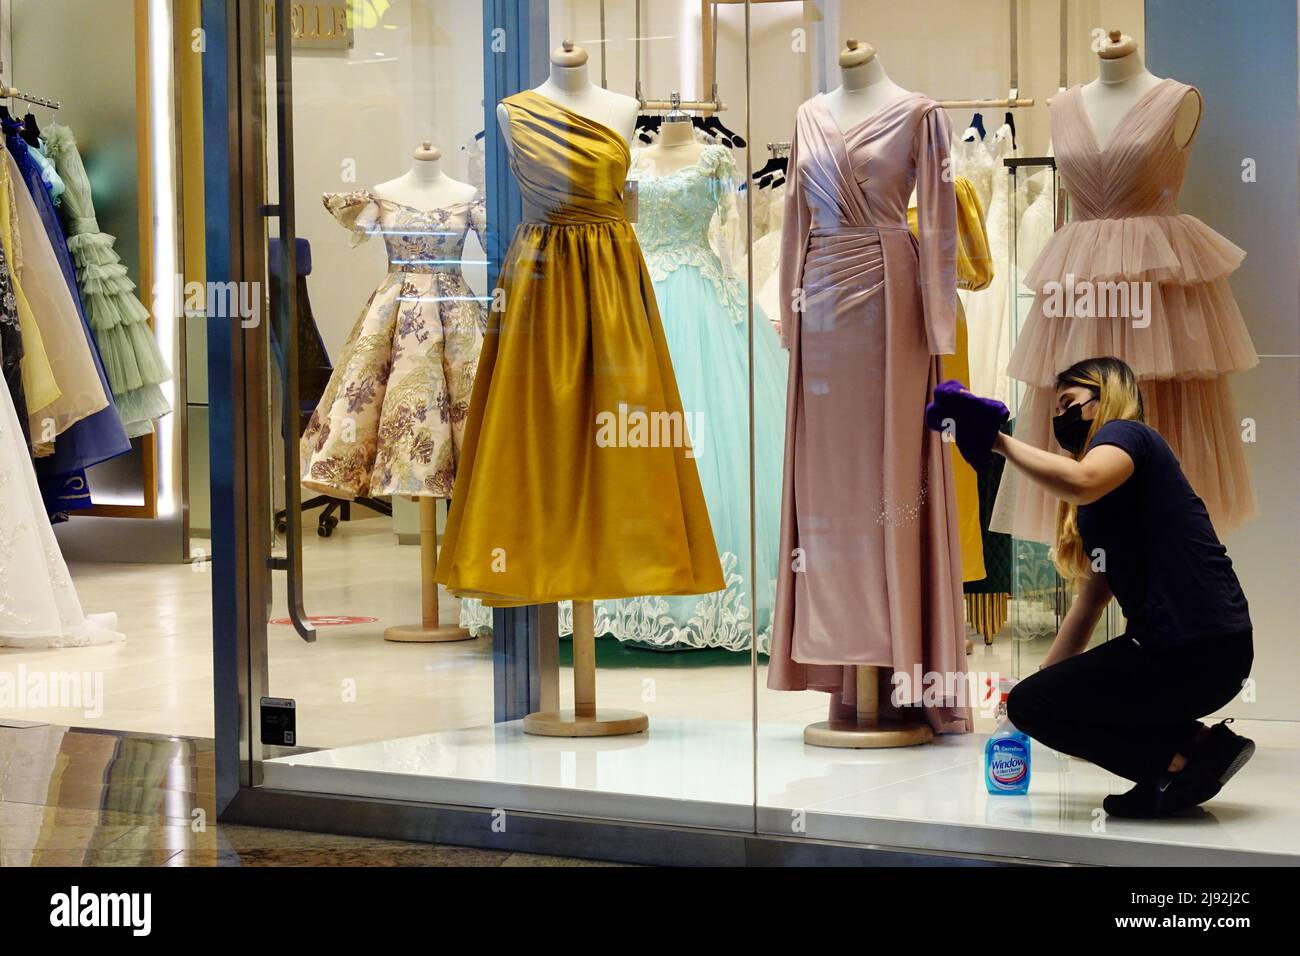 26.03.2021, Dubai, , Vereinigte Arabische Emirate - Verkäuferin reinigt die Fenster eines Modehauses aufgrund von Kundenmangel in Zeiten der Corona-Pandemie. 00S Stockfoto